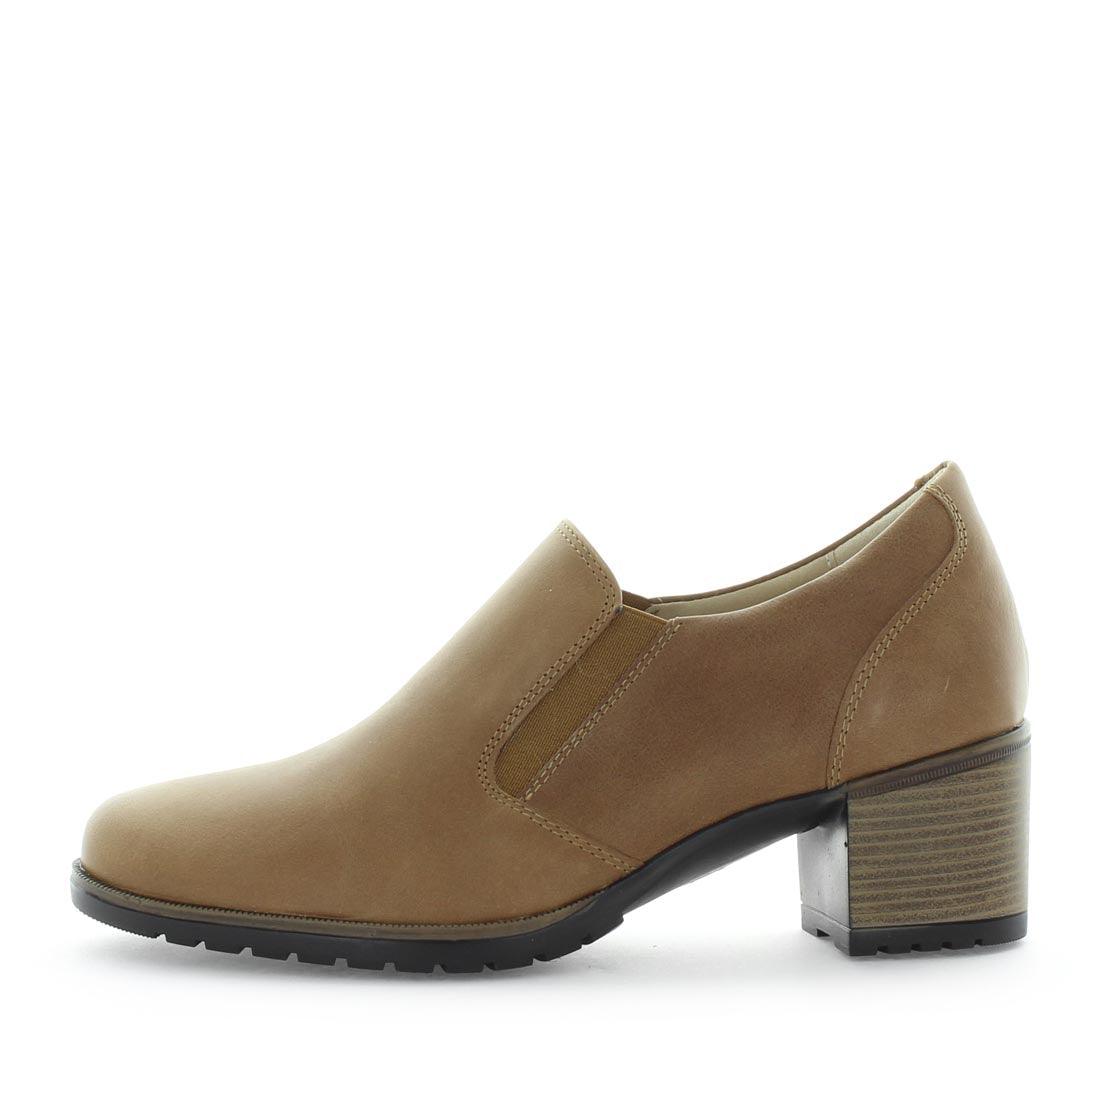 KLEO by KIARFLEX - iShoes - Sale, Sale: Women's Sale, Women's Shoes, Women's Shoes: European - FOOTWEAR-FOOTWEAR